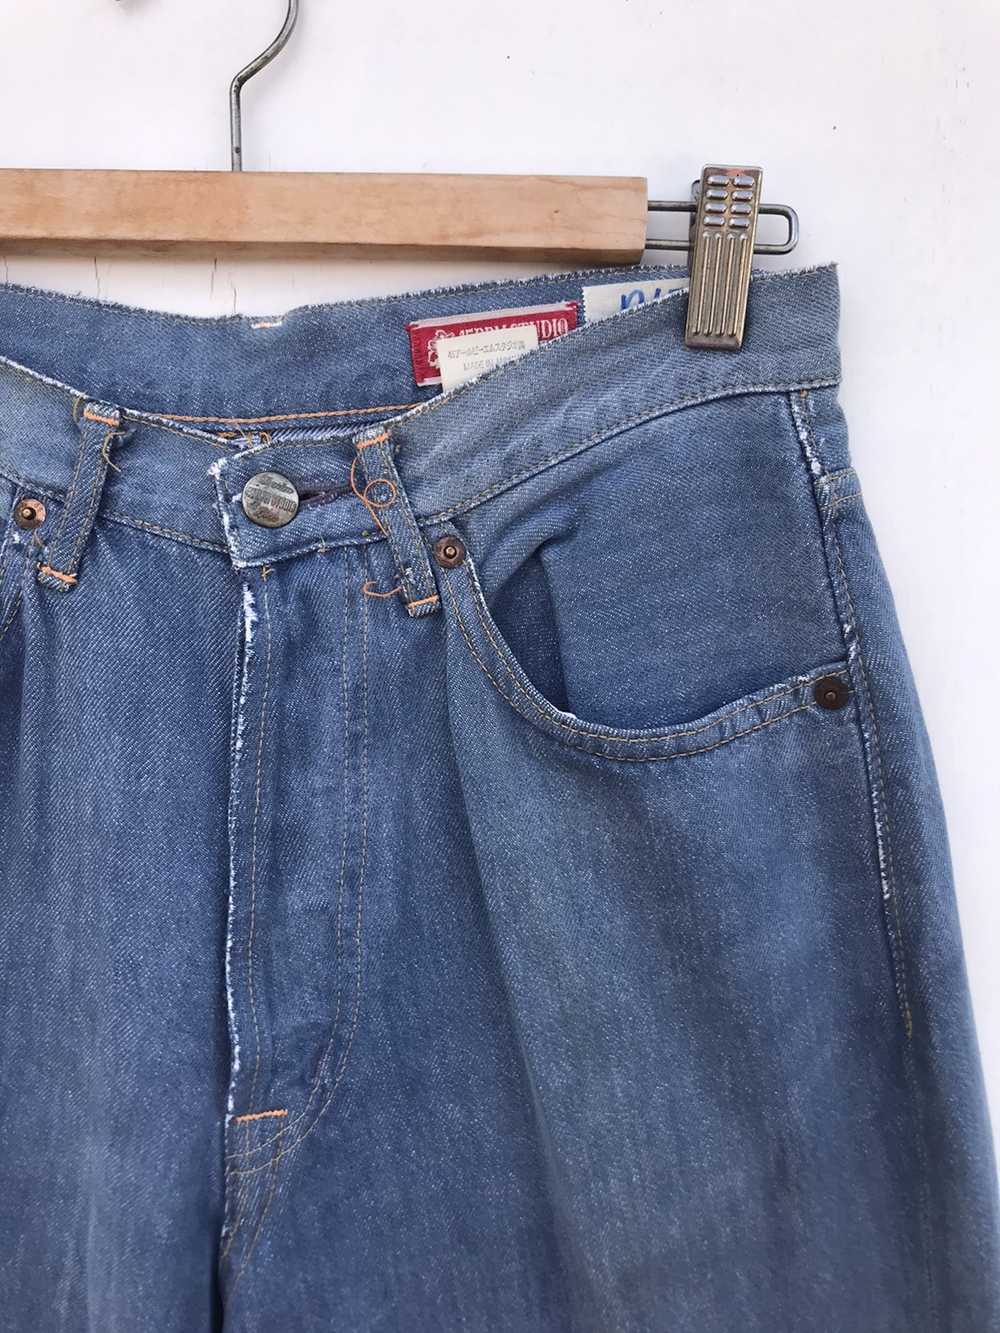 45rpm × Vintage Vintage 45RPM Jeans - image 3